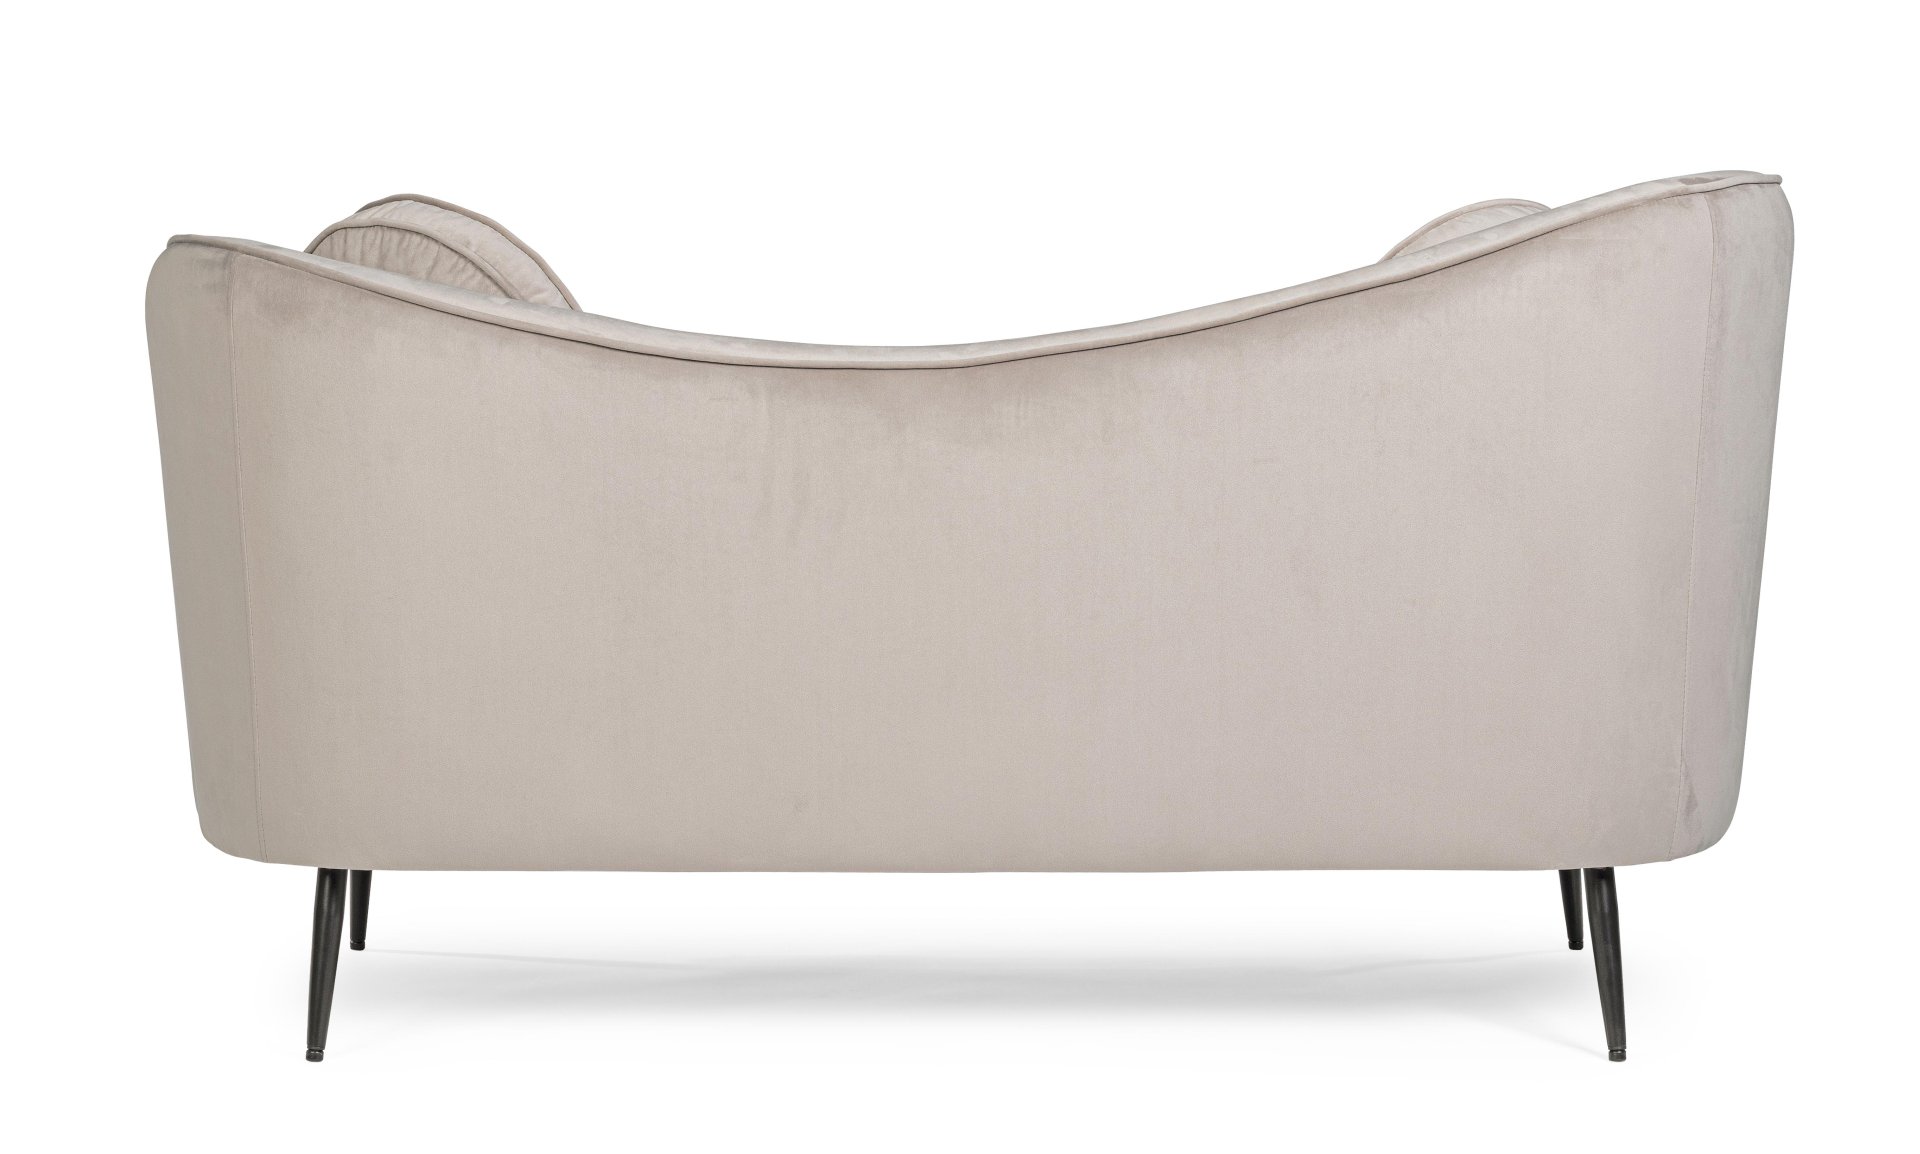 Das Sofa Candis überzeugt mit seinem modernen Design. Gefertigt wurde es aus Stoff in Samt-Optik, welcher einen hellgrauen Farbton besitzt. Das Gestell ist aus Metall und hat eine schwarze Farbe. Das Sofa ist in der Ausführung als 2-Sitzer. Die Breite bet